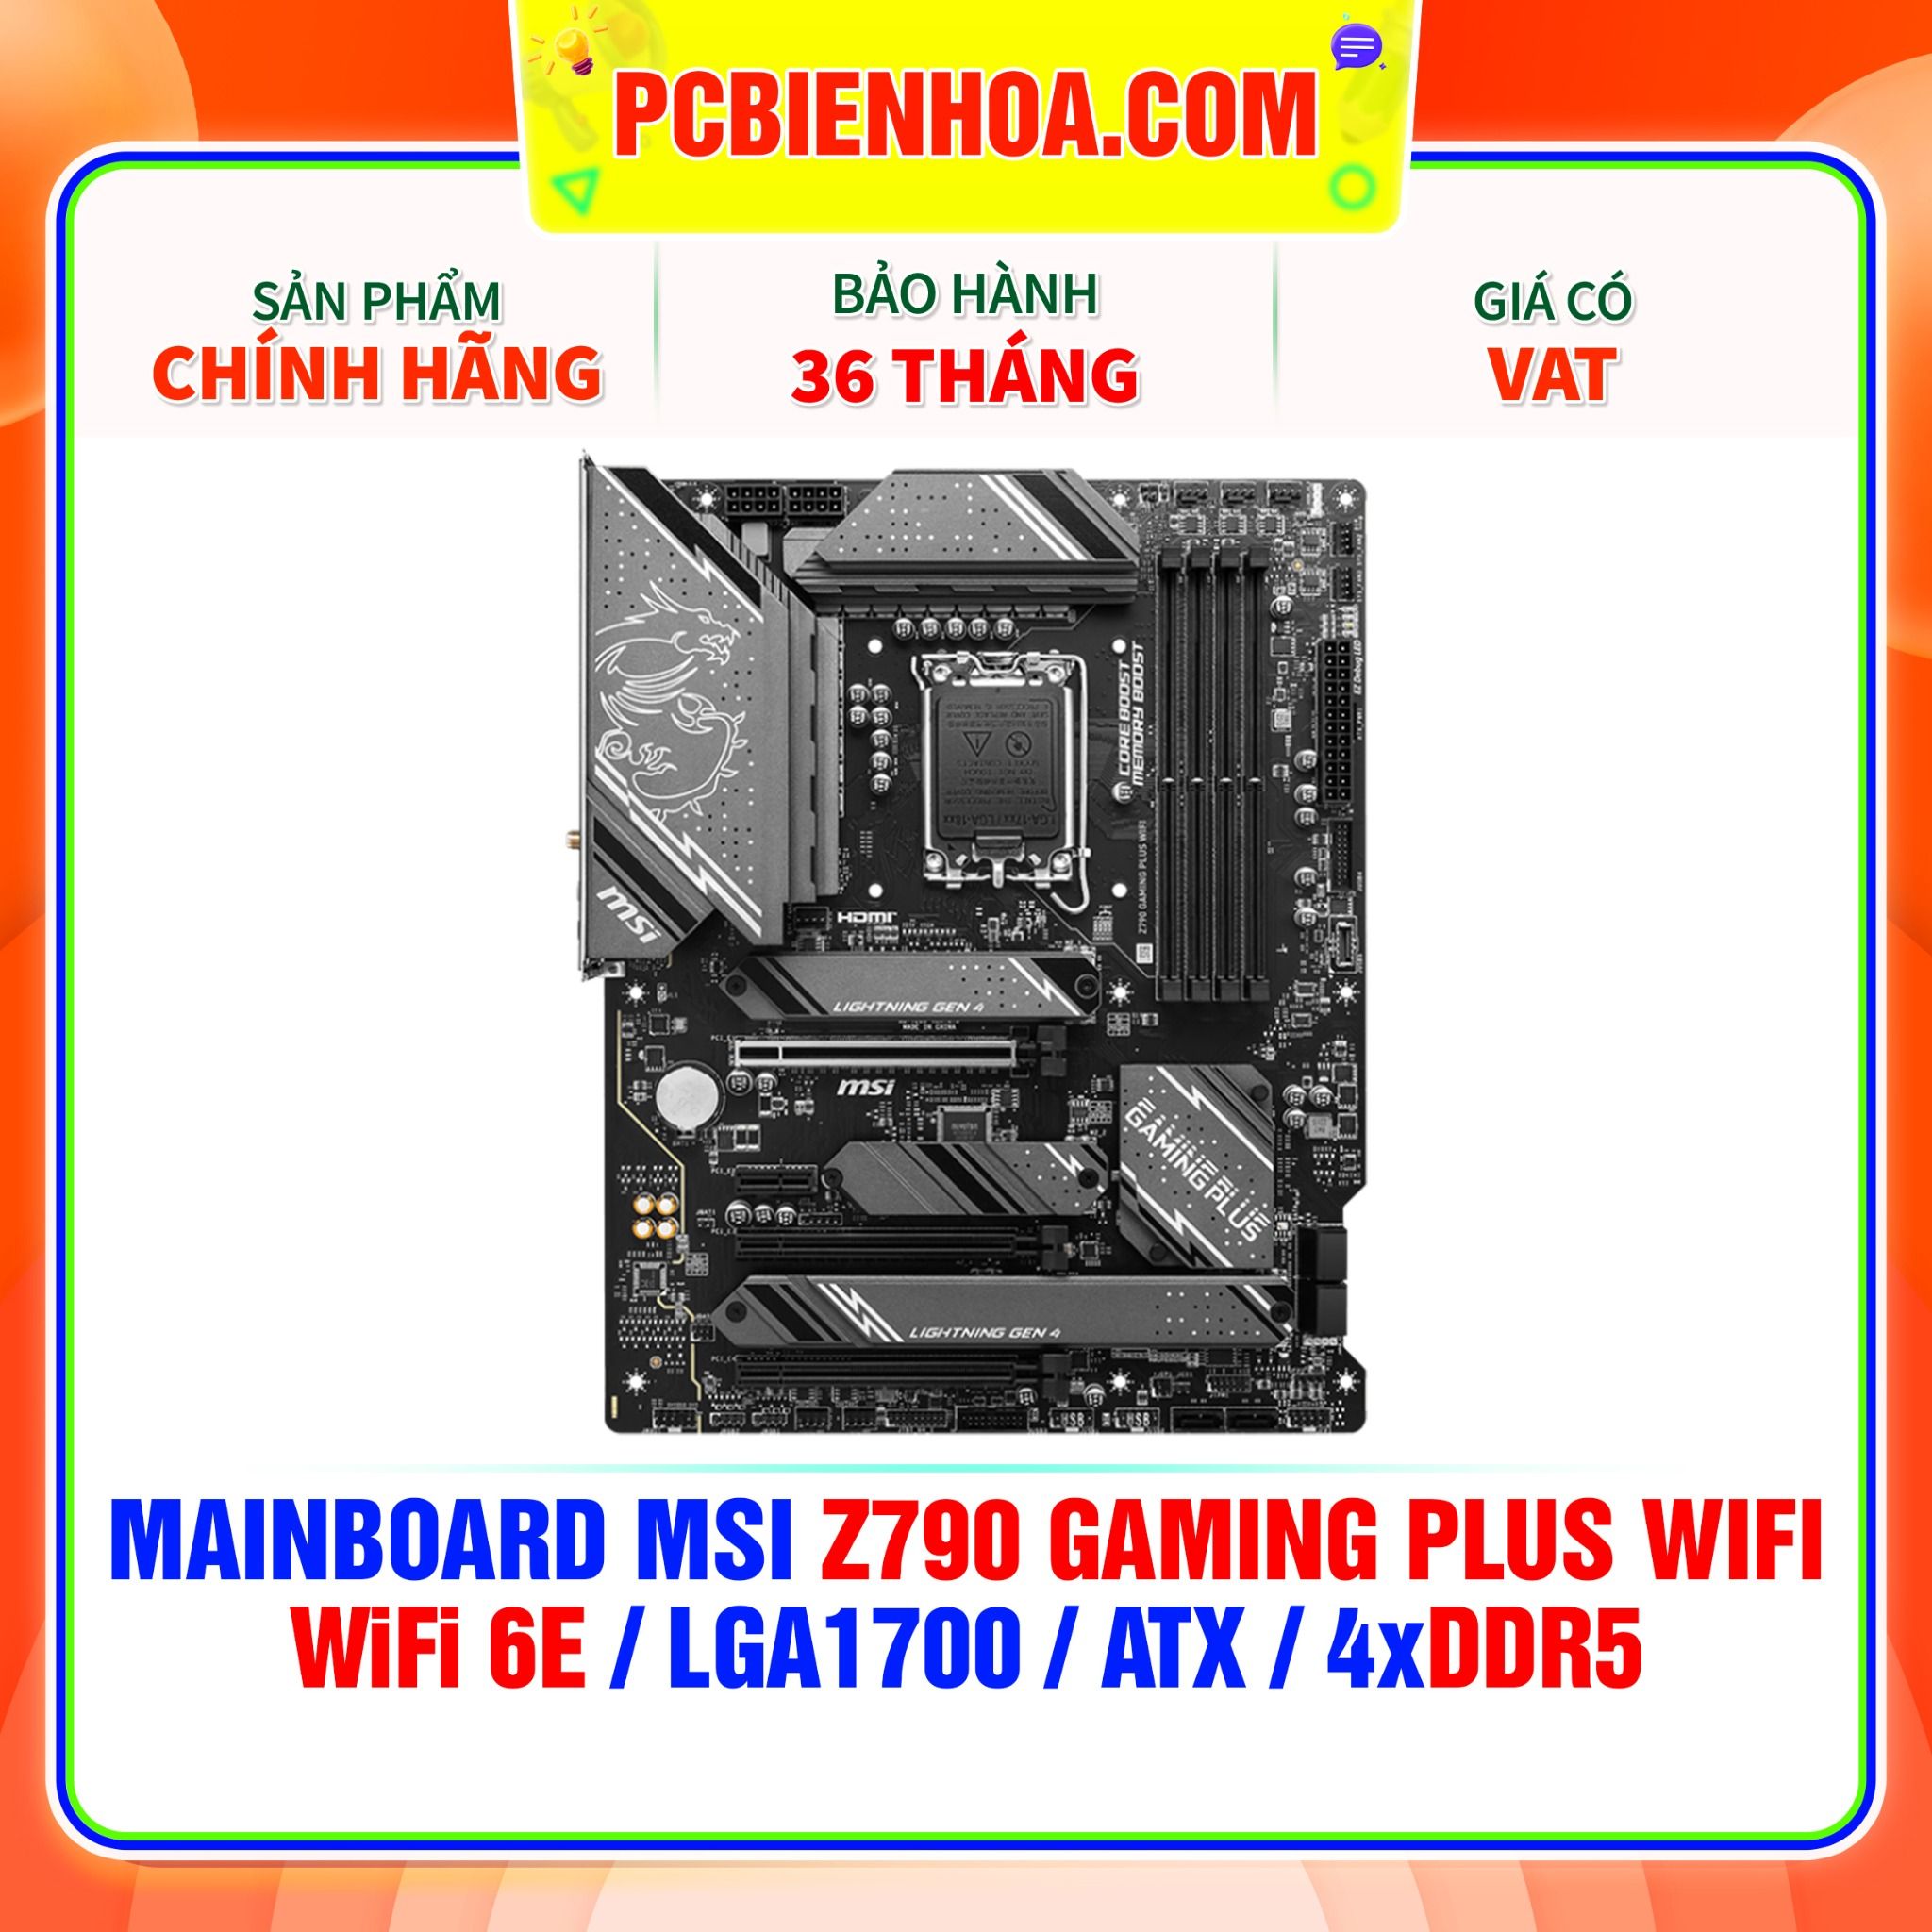  DDR5 - MAINBOARD MSI Z790 GAMING PLUS WIFI ( WIFI 6E / LGA1700 / ATX / 4xDDR5 ) 